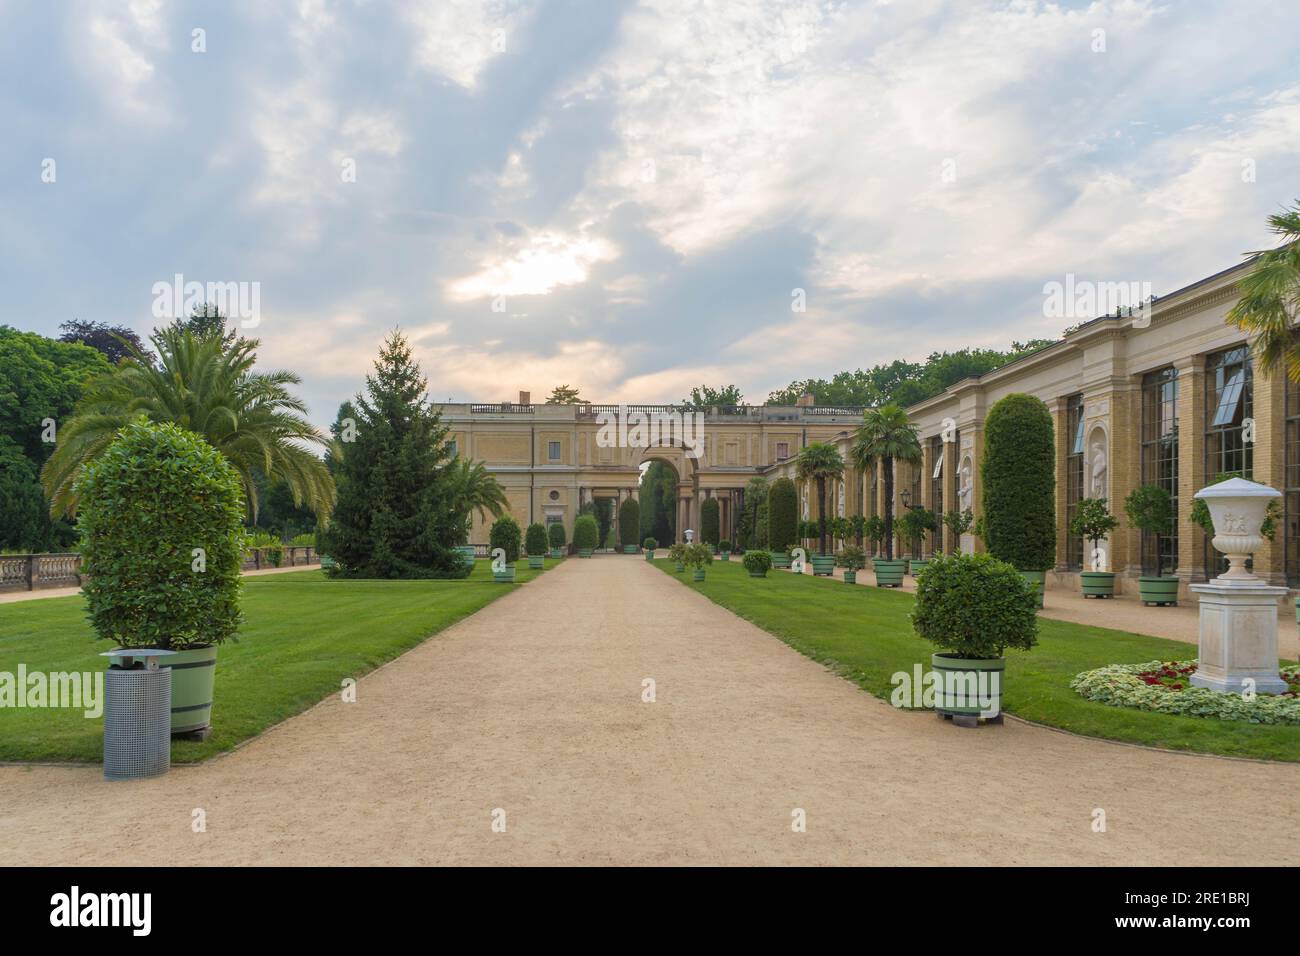 Potsdam, Allemagne. 24 juillet 2021. Palais de l'Orangerie historique à Potsdam, en Allemagne, au milieu de palmiers luxuriants dans le parc Sanssouci de Potsdam par un après-midi glorieux Banque D'Images